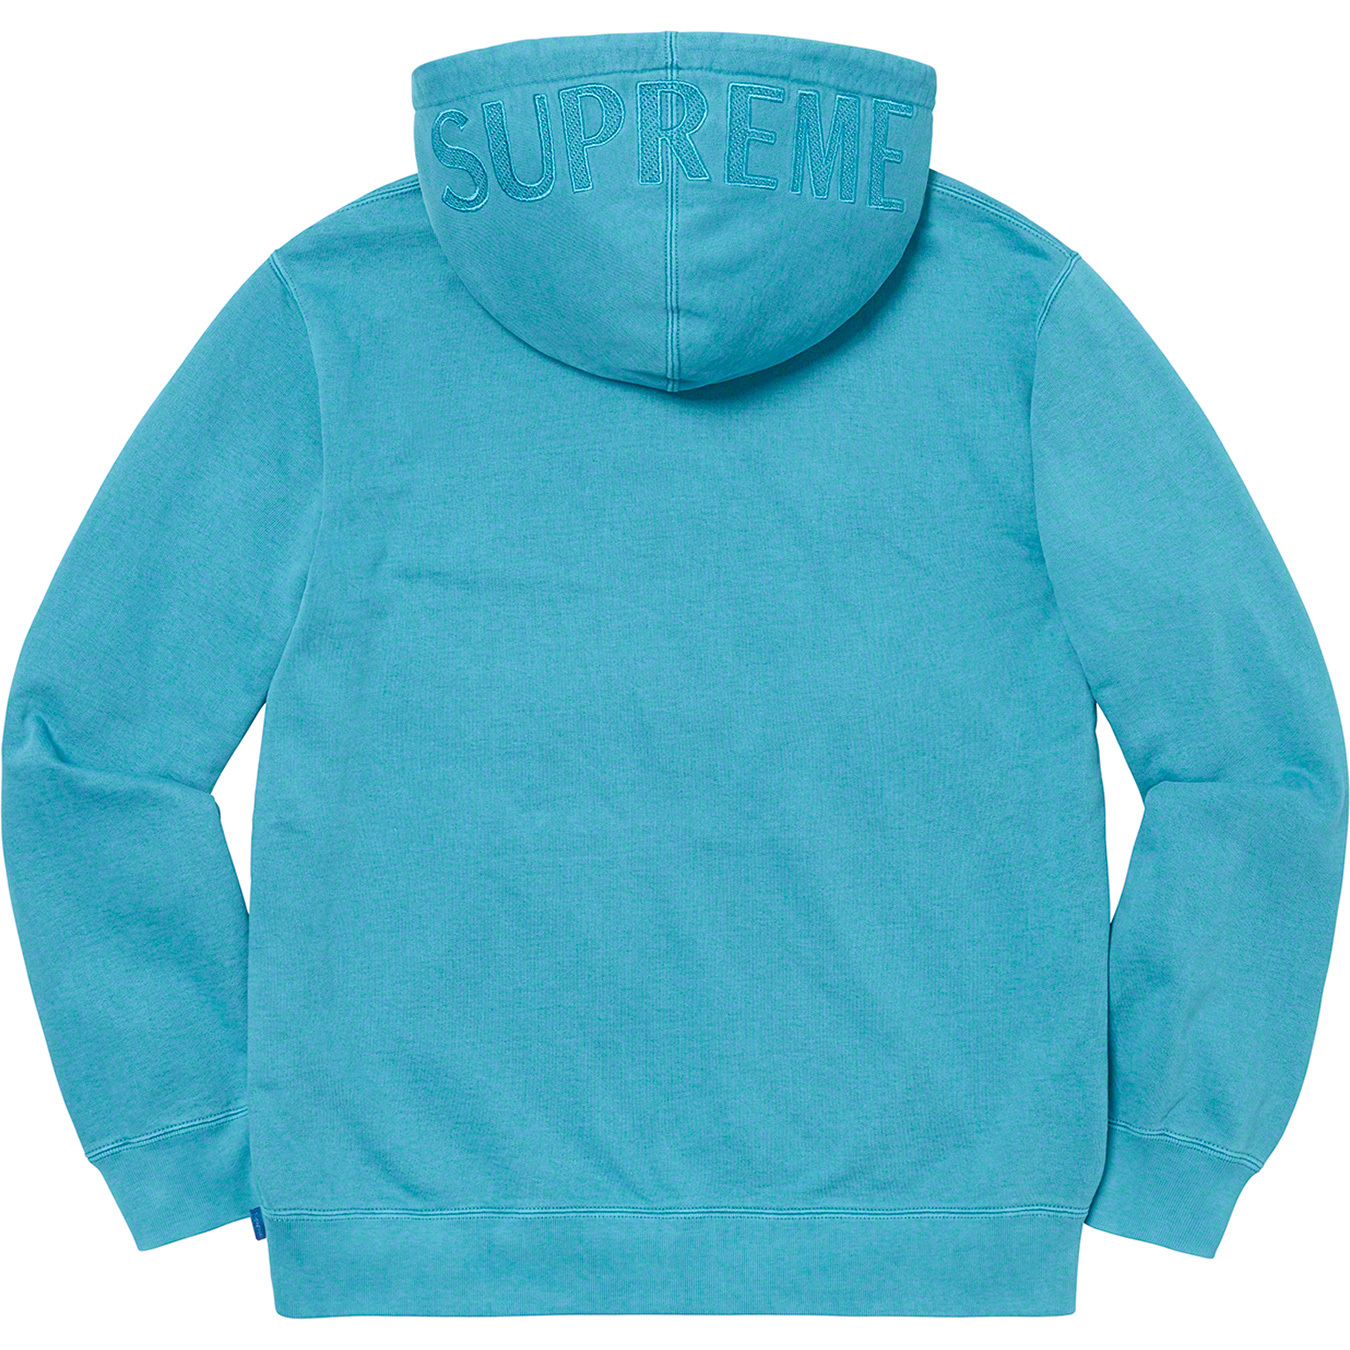 Overdyed Hooded Sweatshirt - Supreme Community